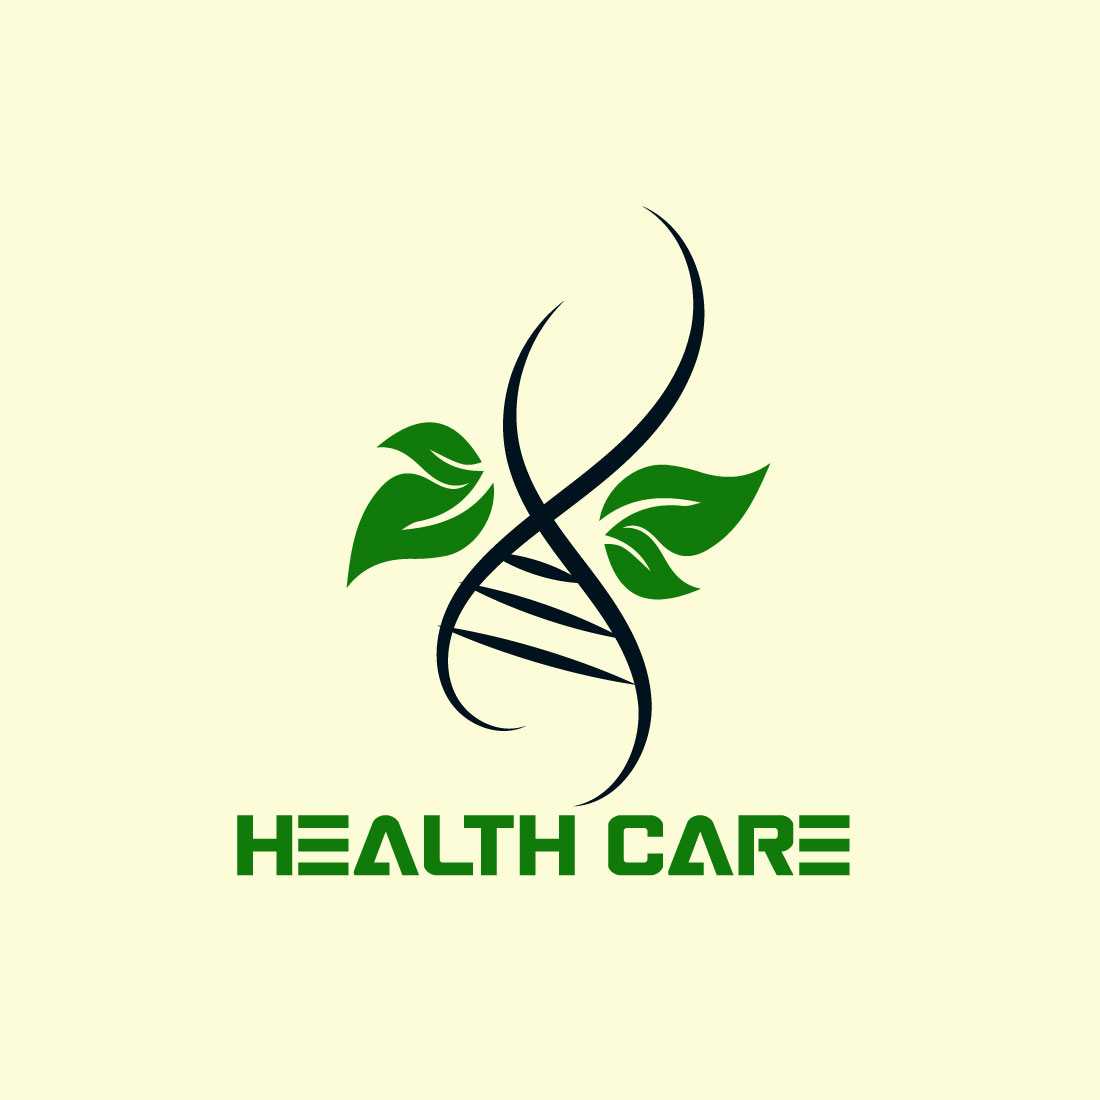 Free Health Center Logo cover image.